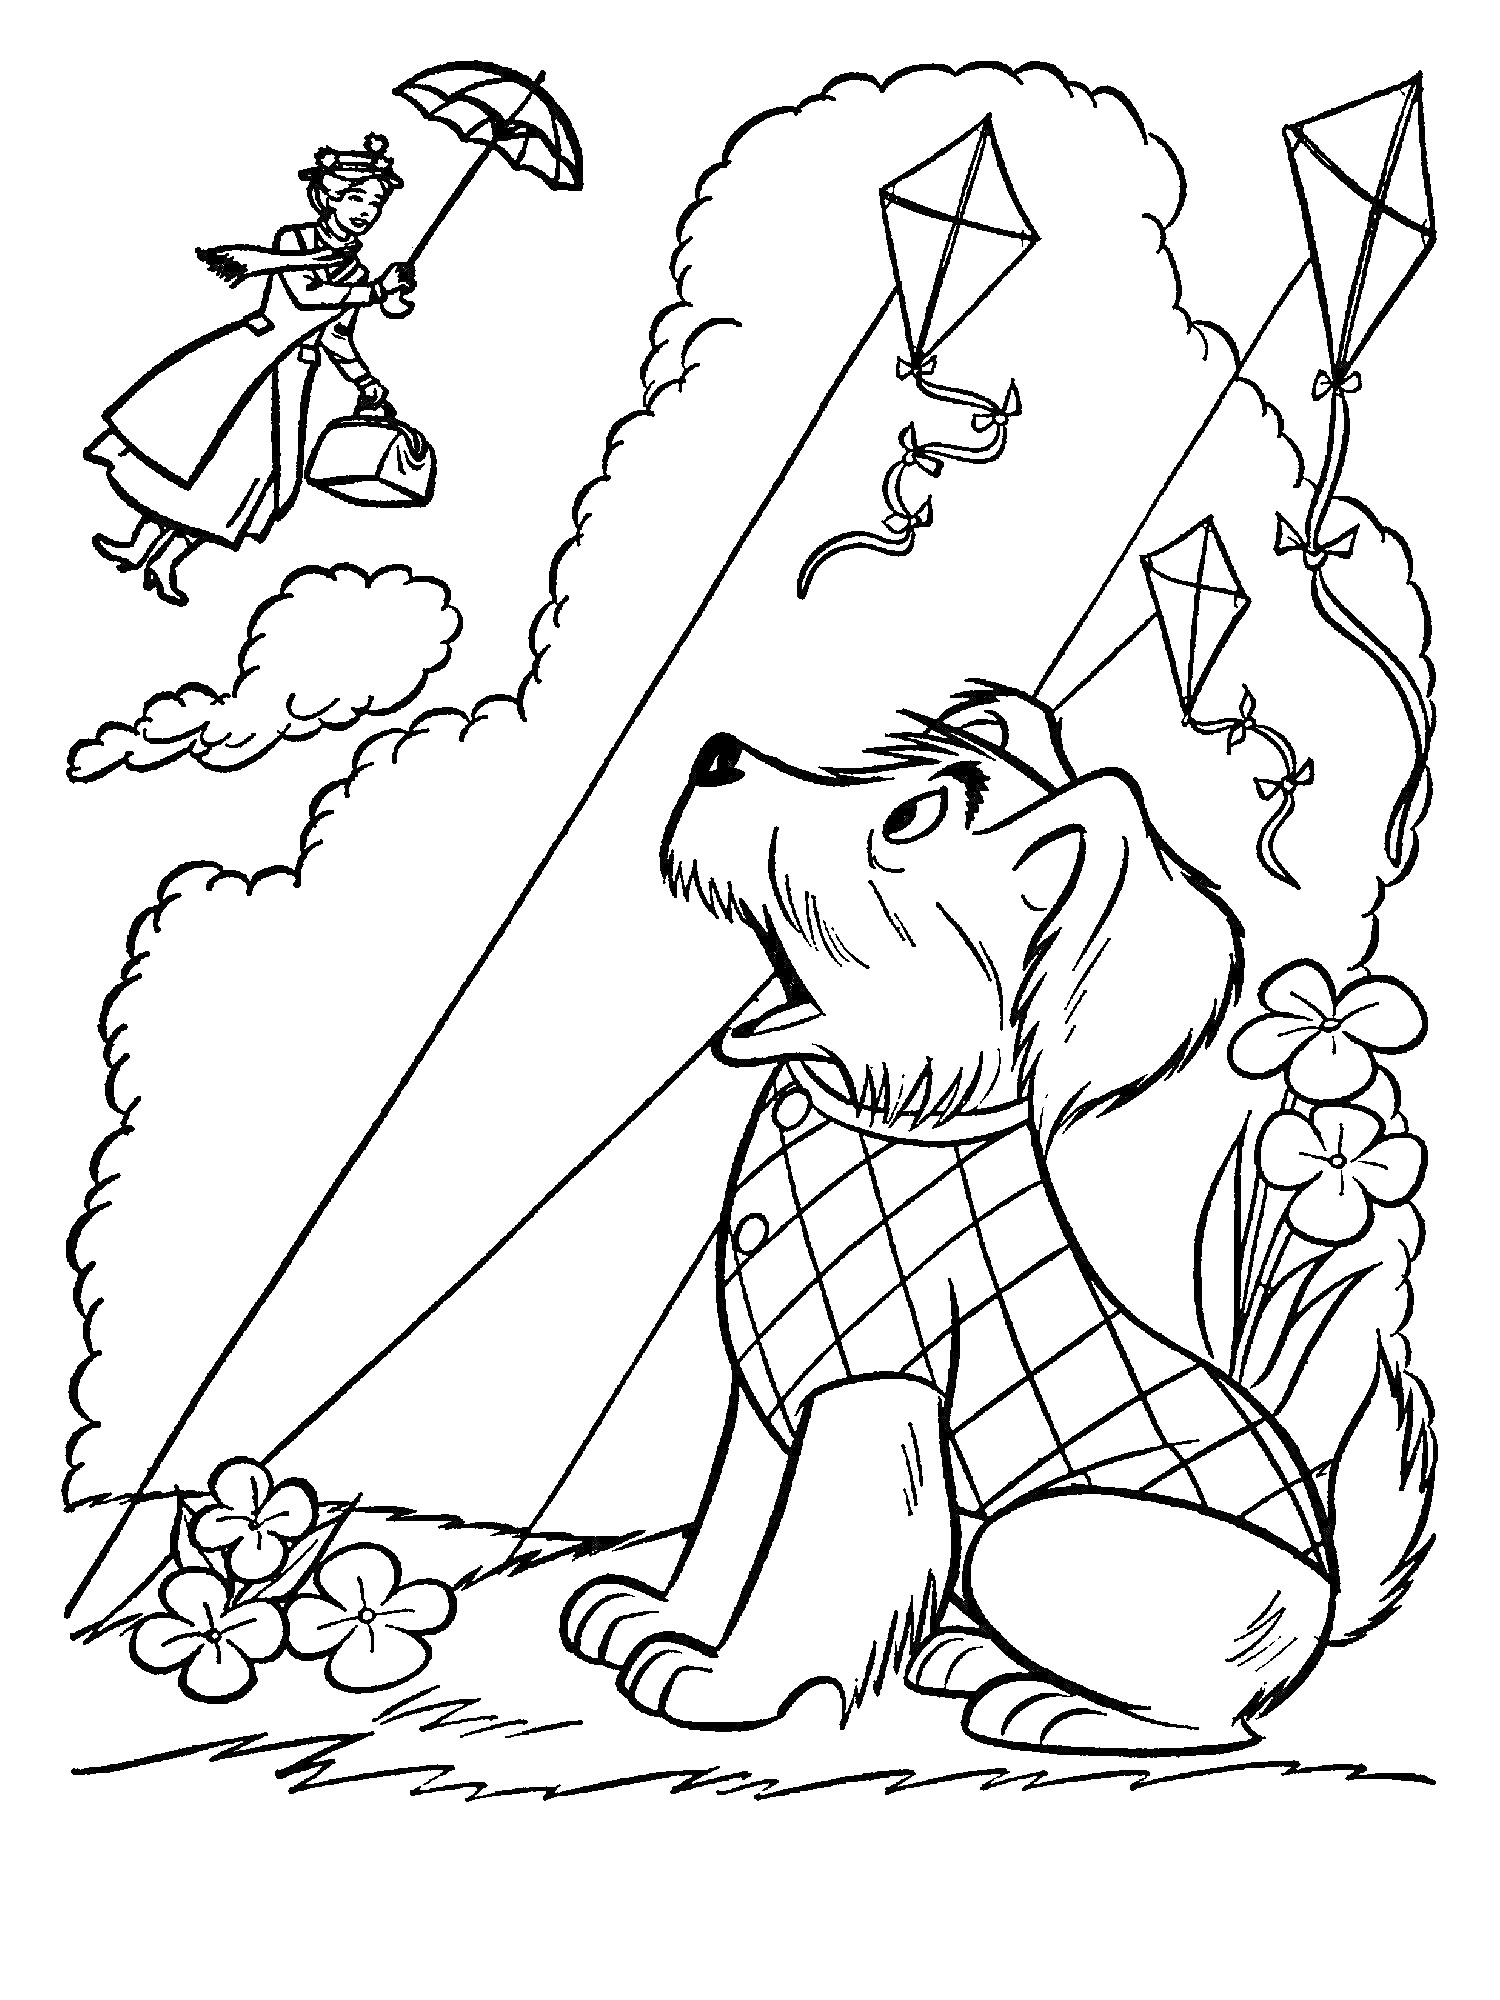 Мэри Поппинс летит с зонтом над собакой в клетчатом свитере, которая сидит на траве среди цветов и смотрит на воздушных змеев.